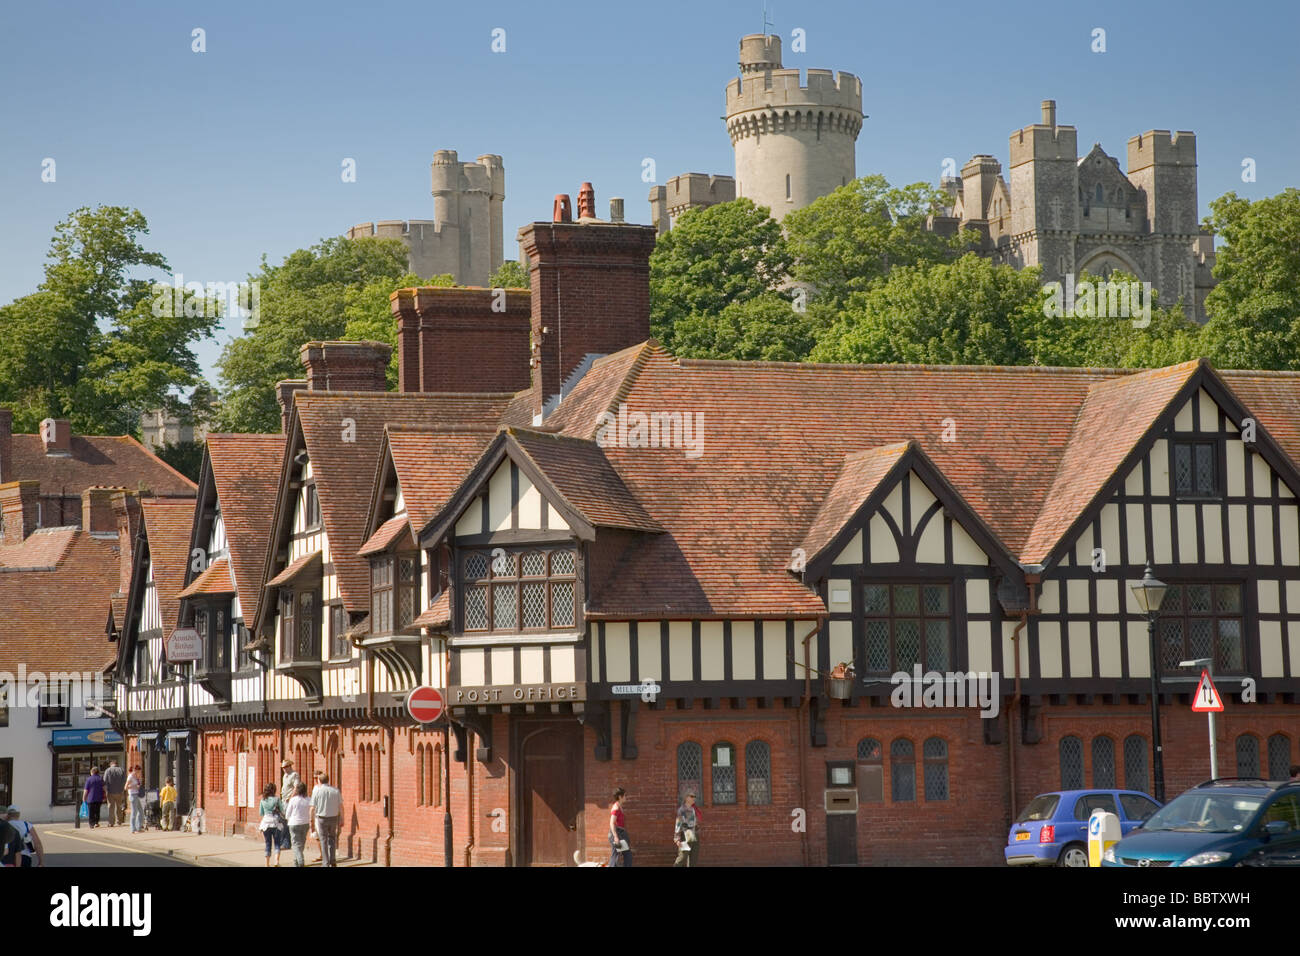 Arundel Stadt und Burg in West Sussex England Stockfotografie - Alamy